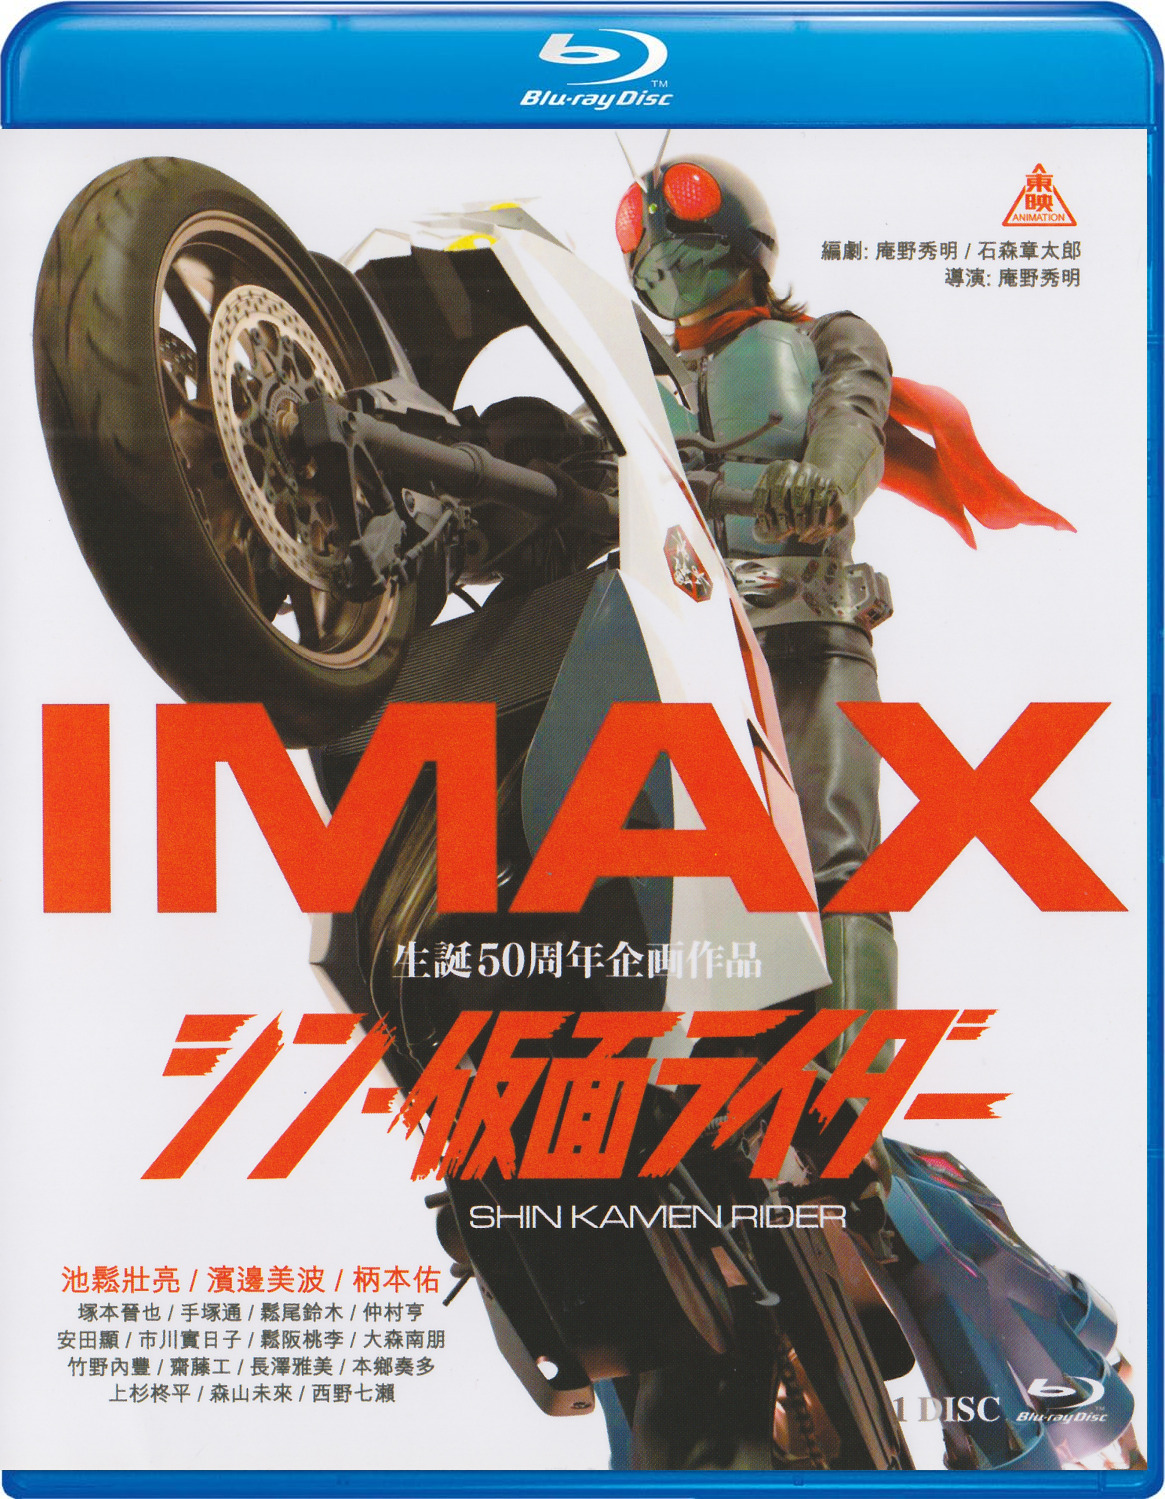 Shin Kamen Rider Blu-ray (Shin Masked Rider/新·假面骑士) (Taiwan)